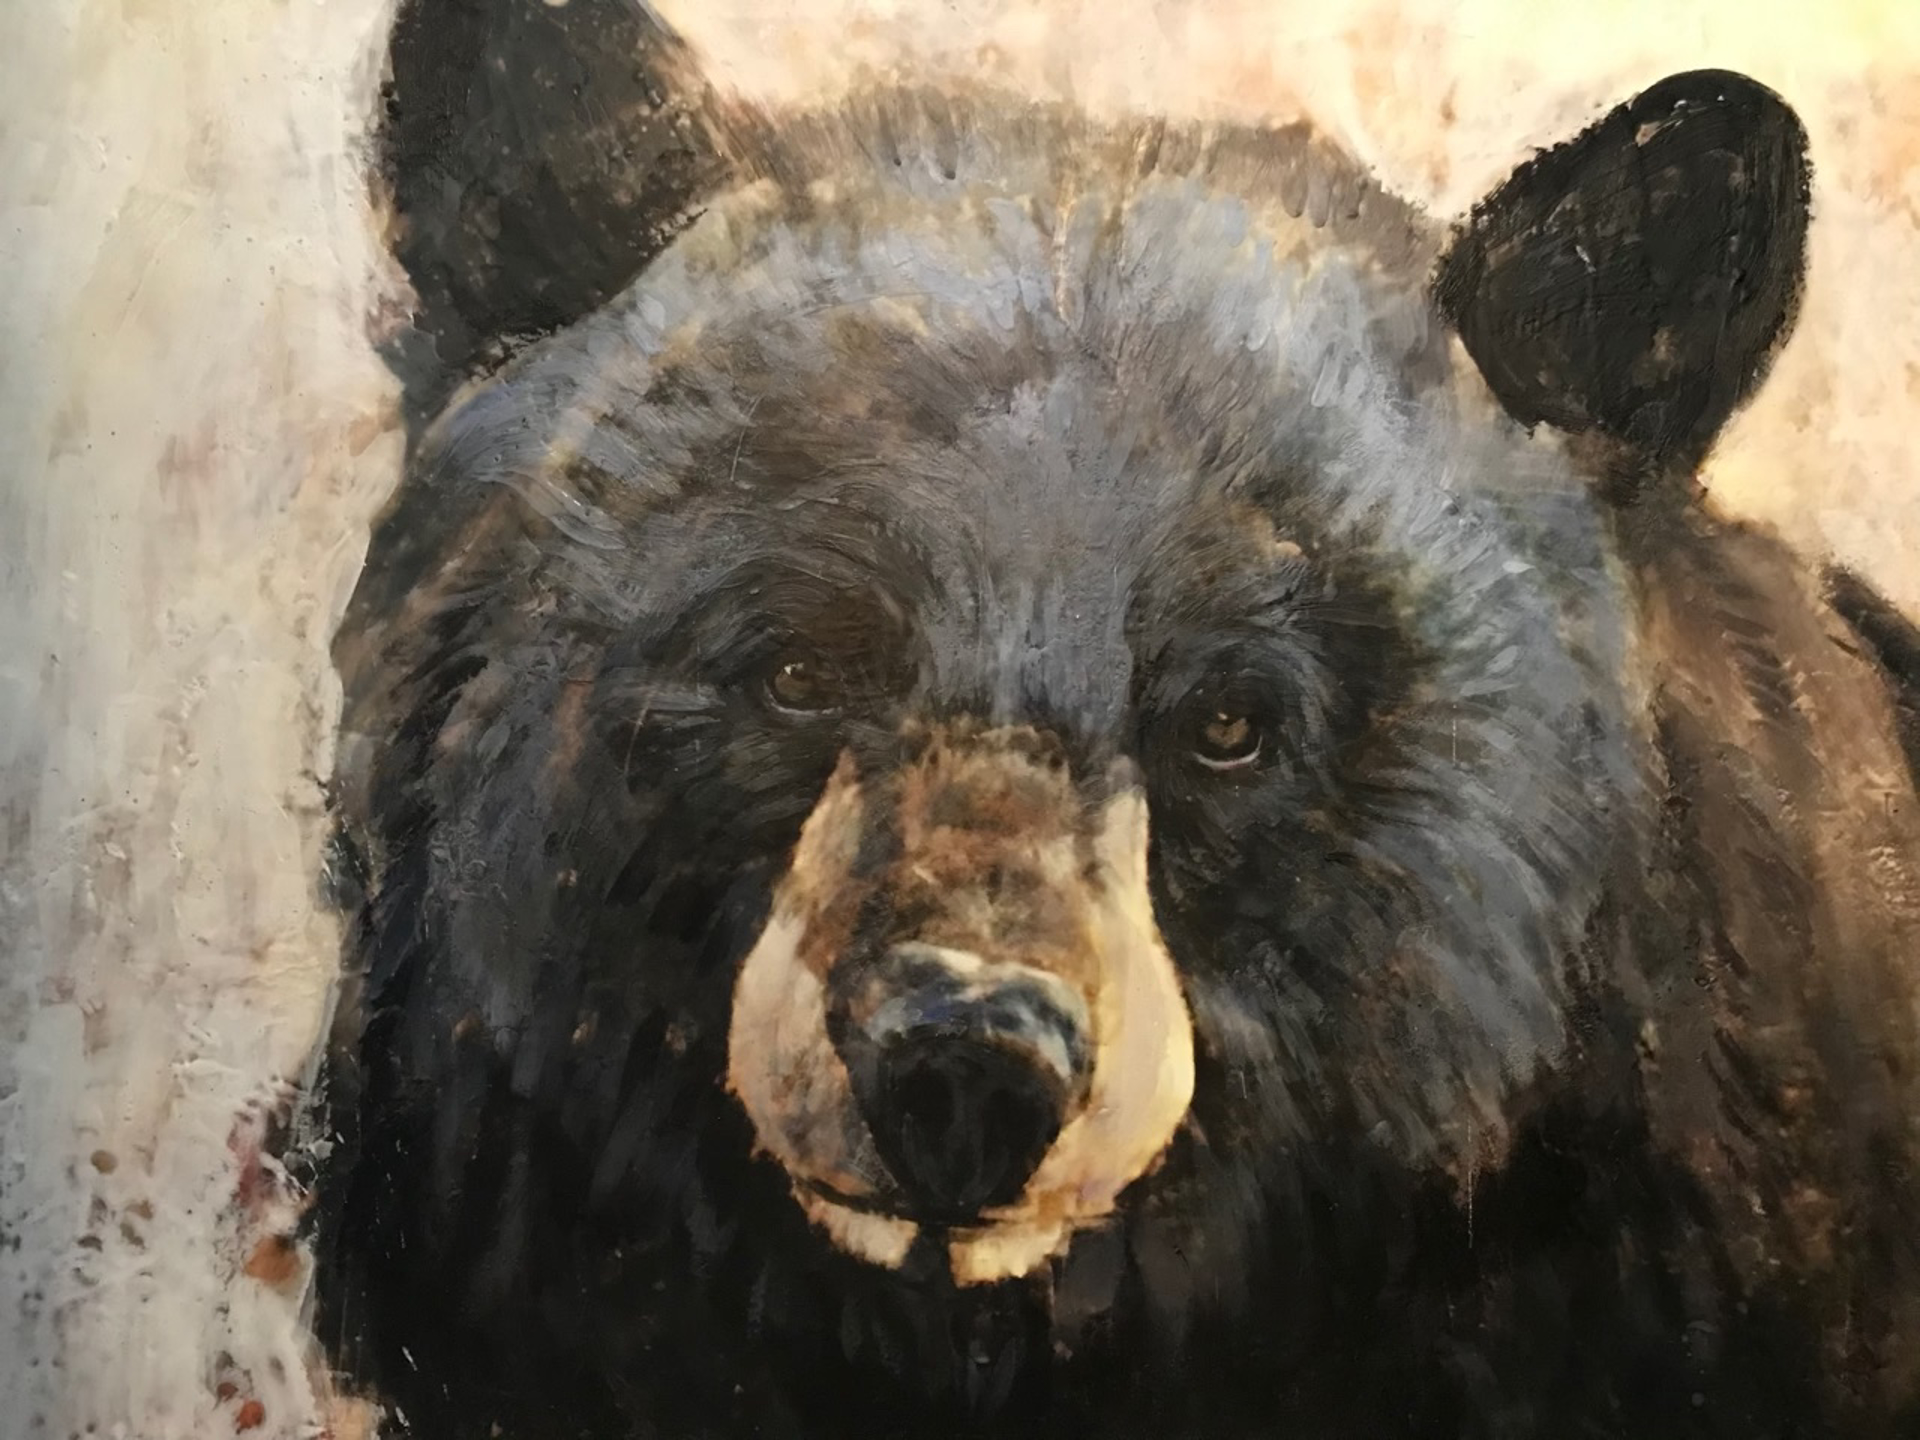 Bear Head #2020 by Paul Garbett